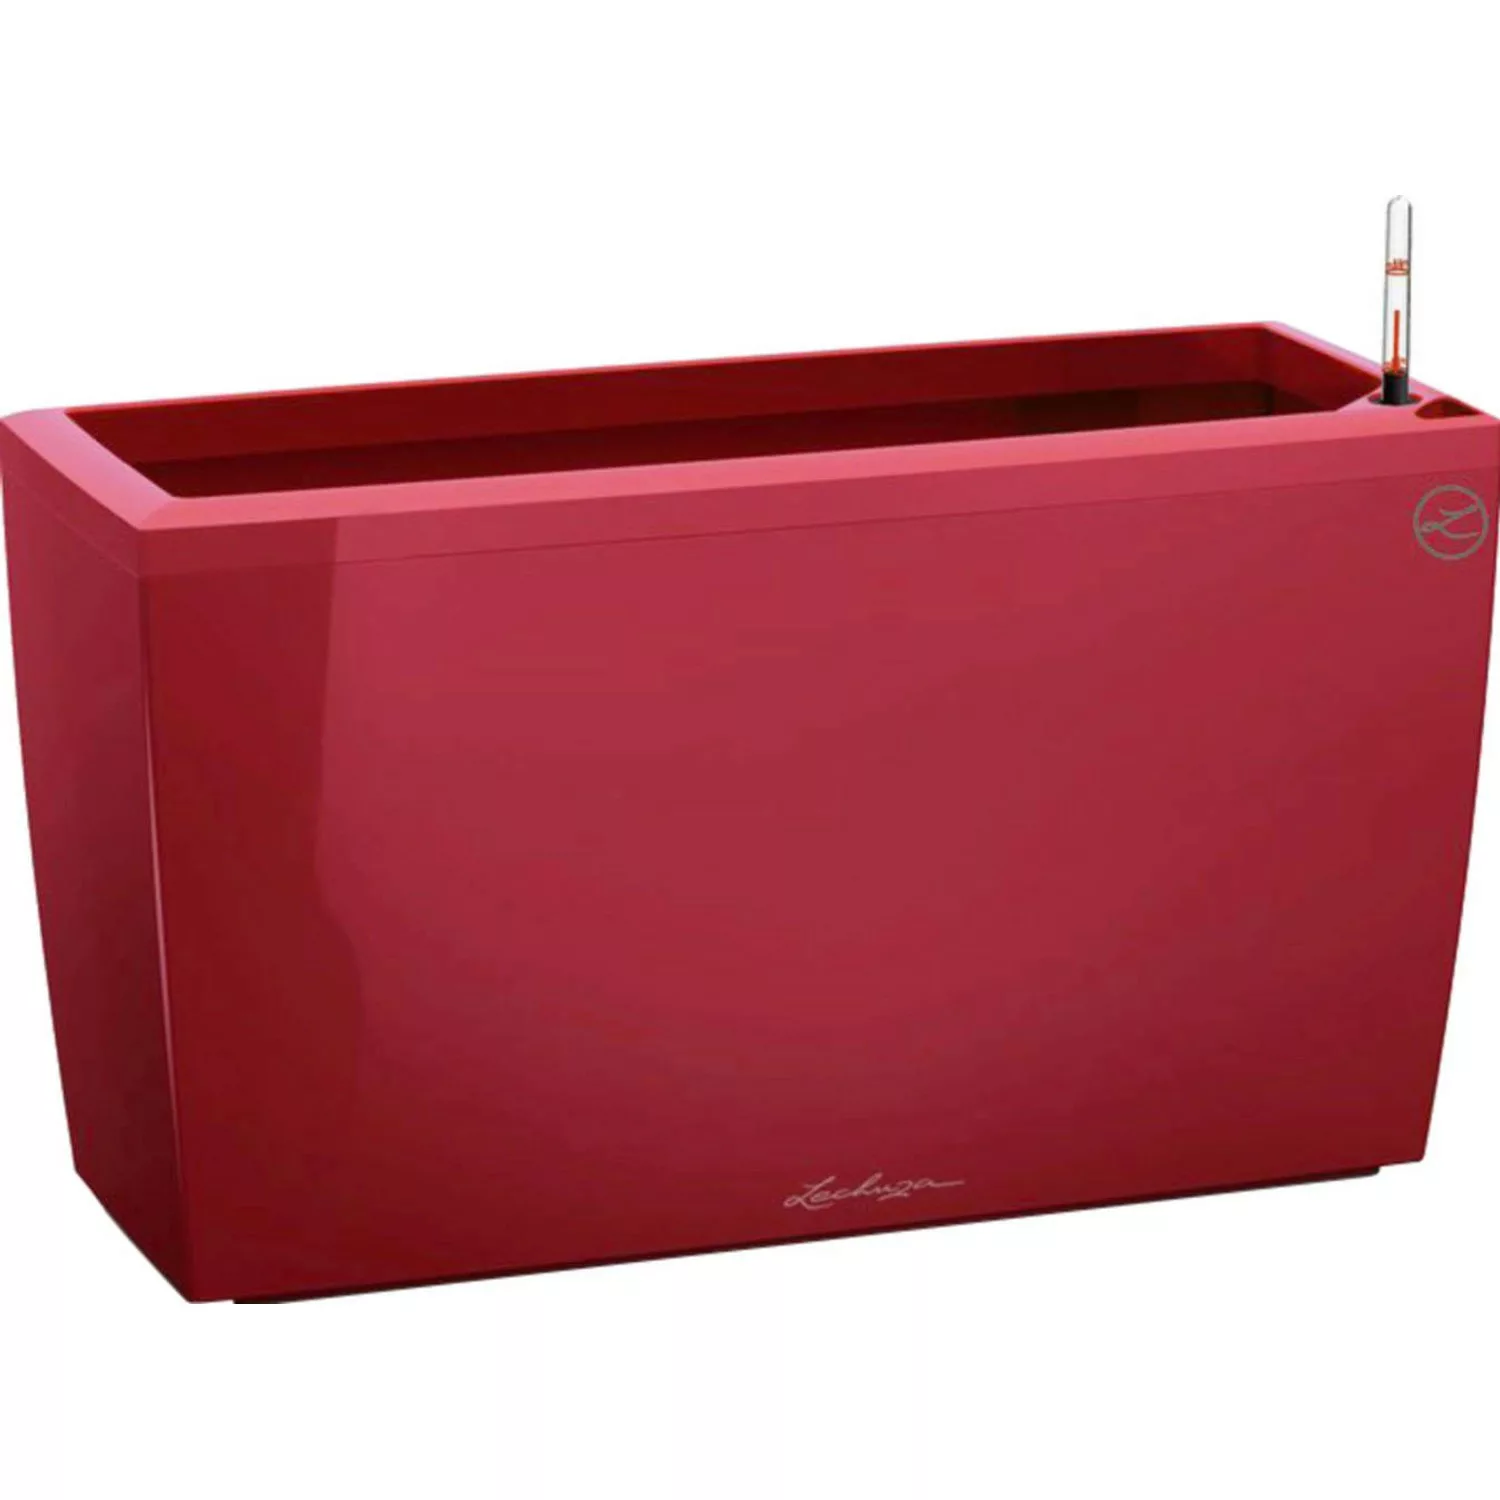 Lechuza Pflanzgefäß Cararo Premium 75 cm x 30 cm Scarlet rot hochglanz günstig online kaufen